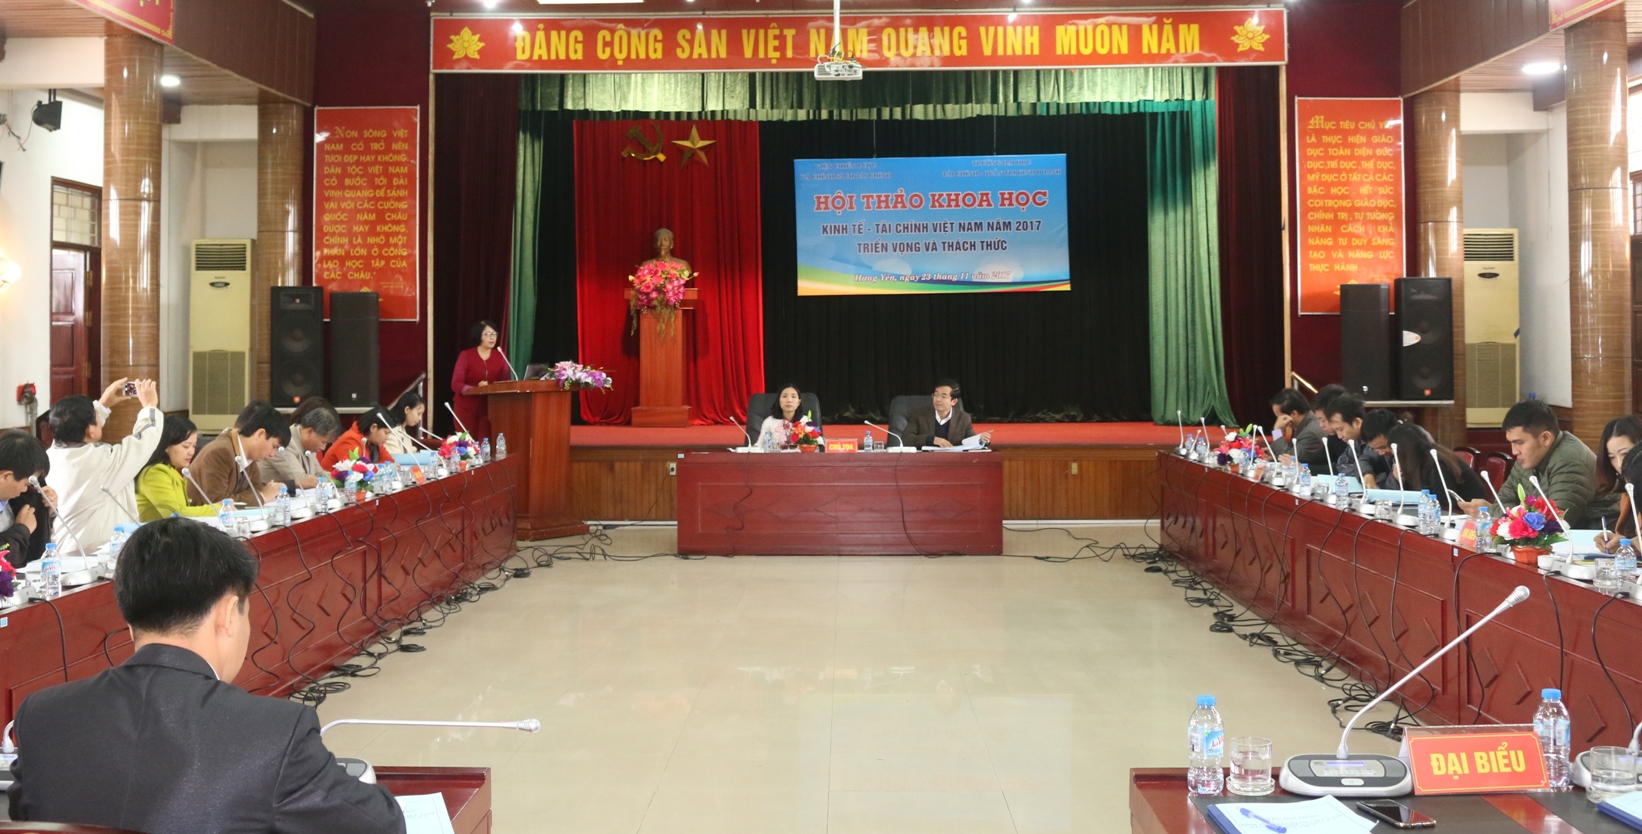 Hội thảo “Kinh tế - tài chính Việt Nam năm 2017: Triển vọng và thách thức”.